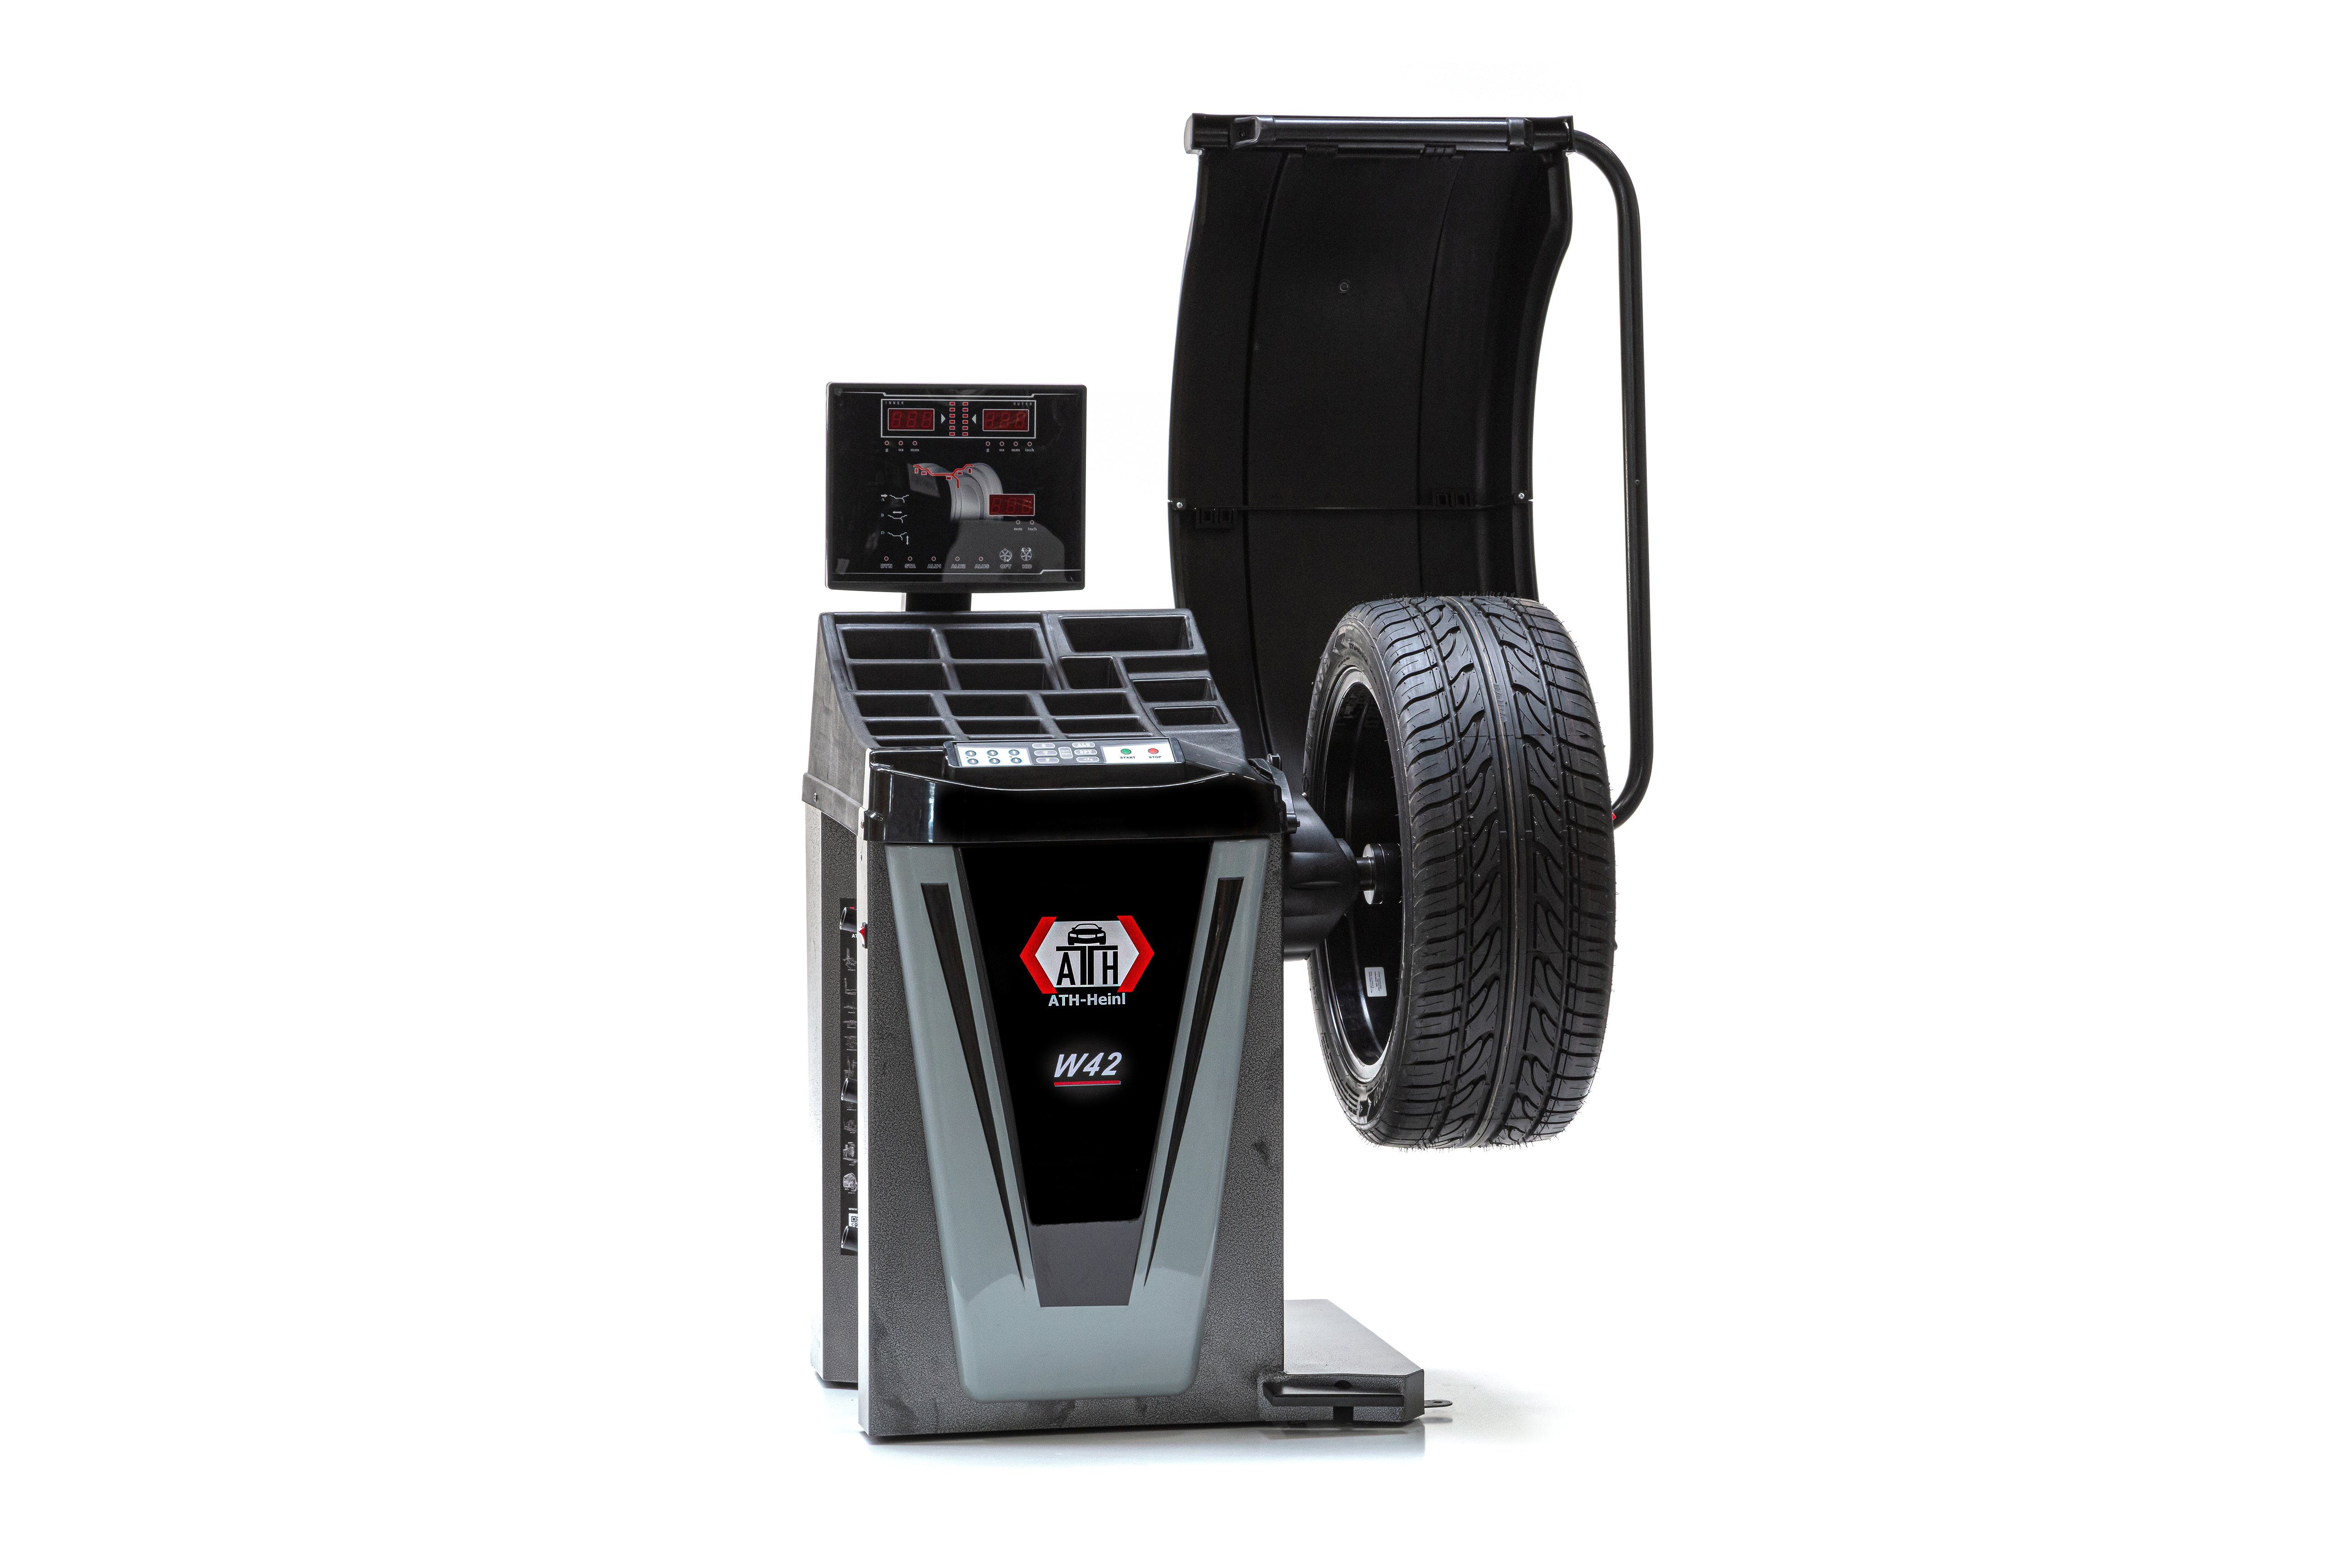 ATH-Heinl Reifenwuchtmaschine W42 LED 2D Radauswuchtmaschine Wuchtmaschine, für Felgen von 12,00 - 24,00, 230V V